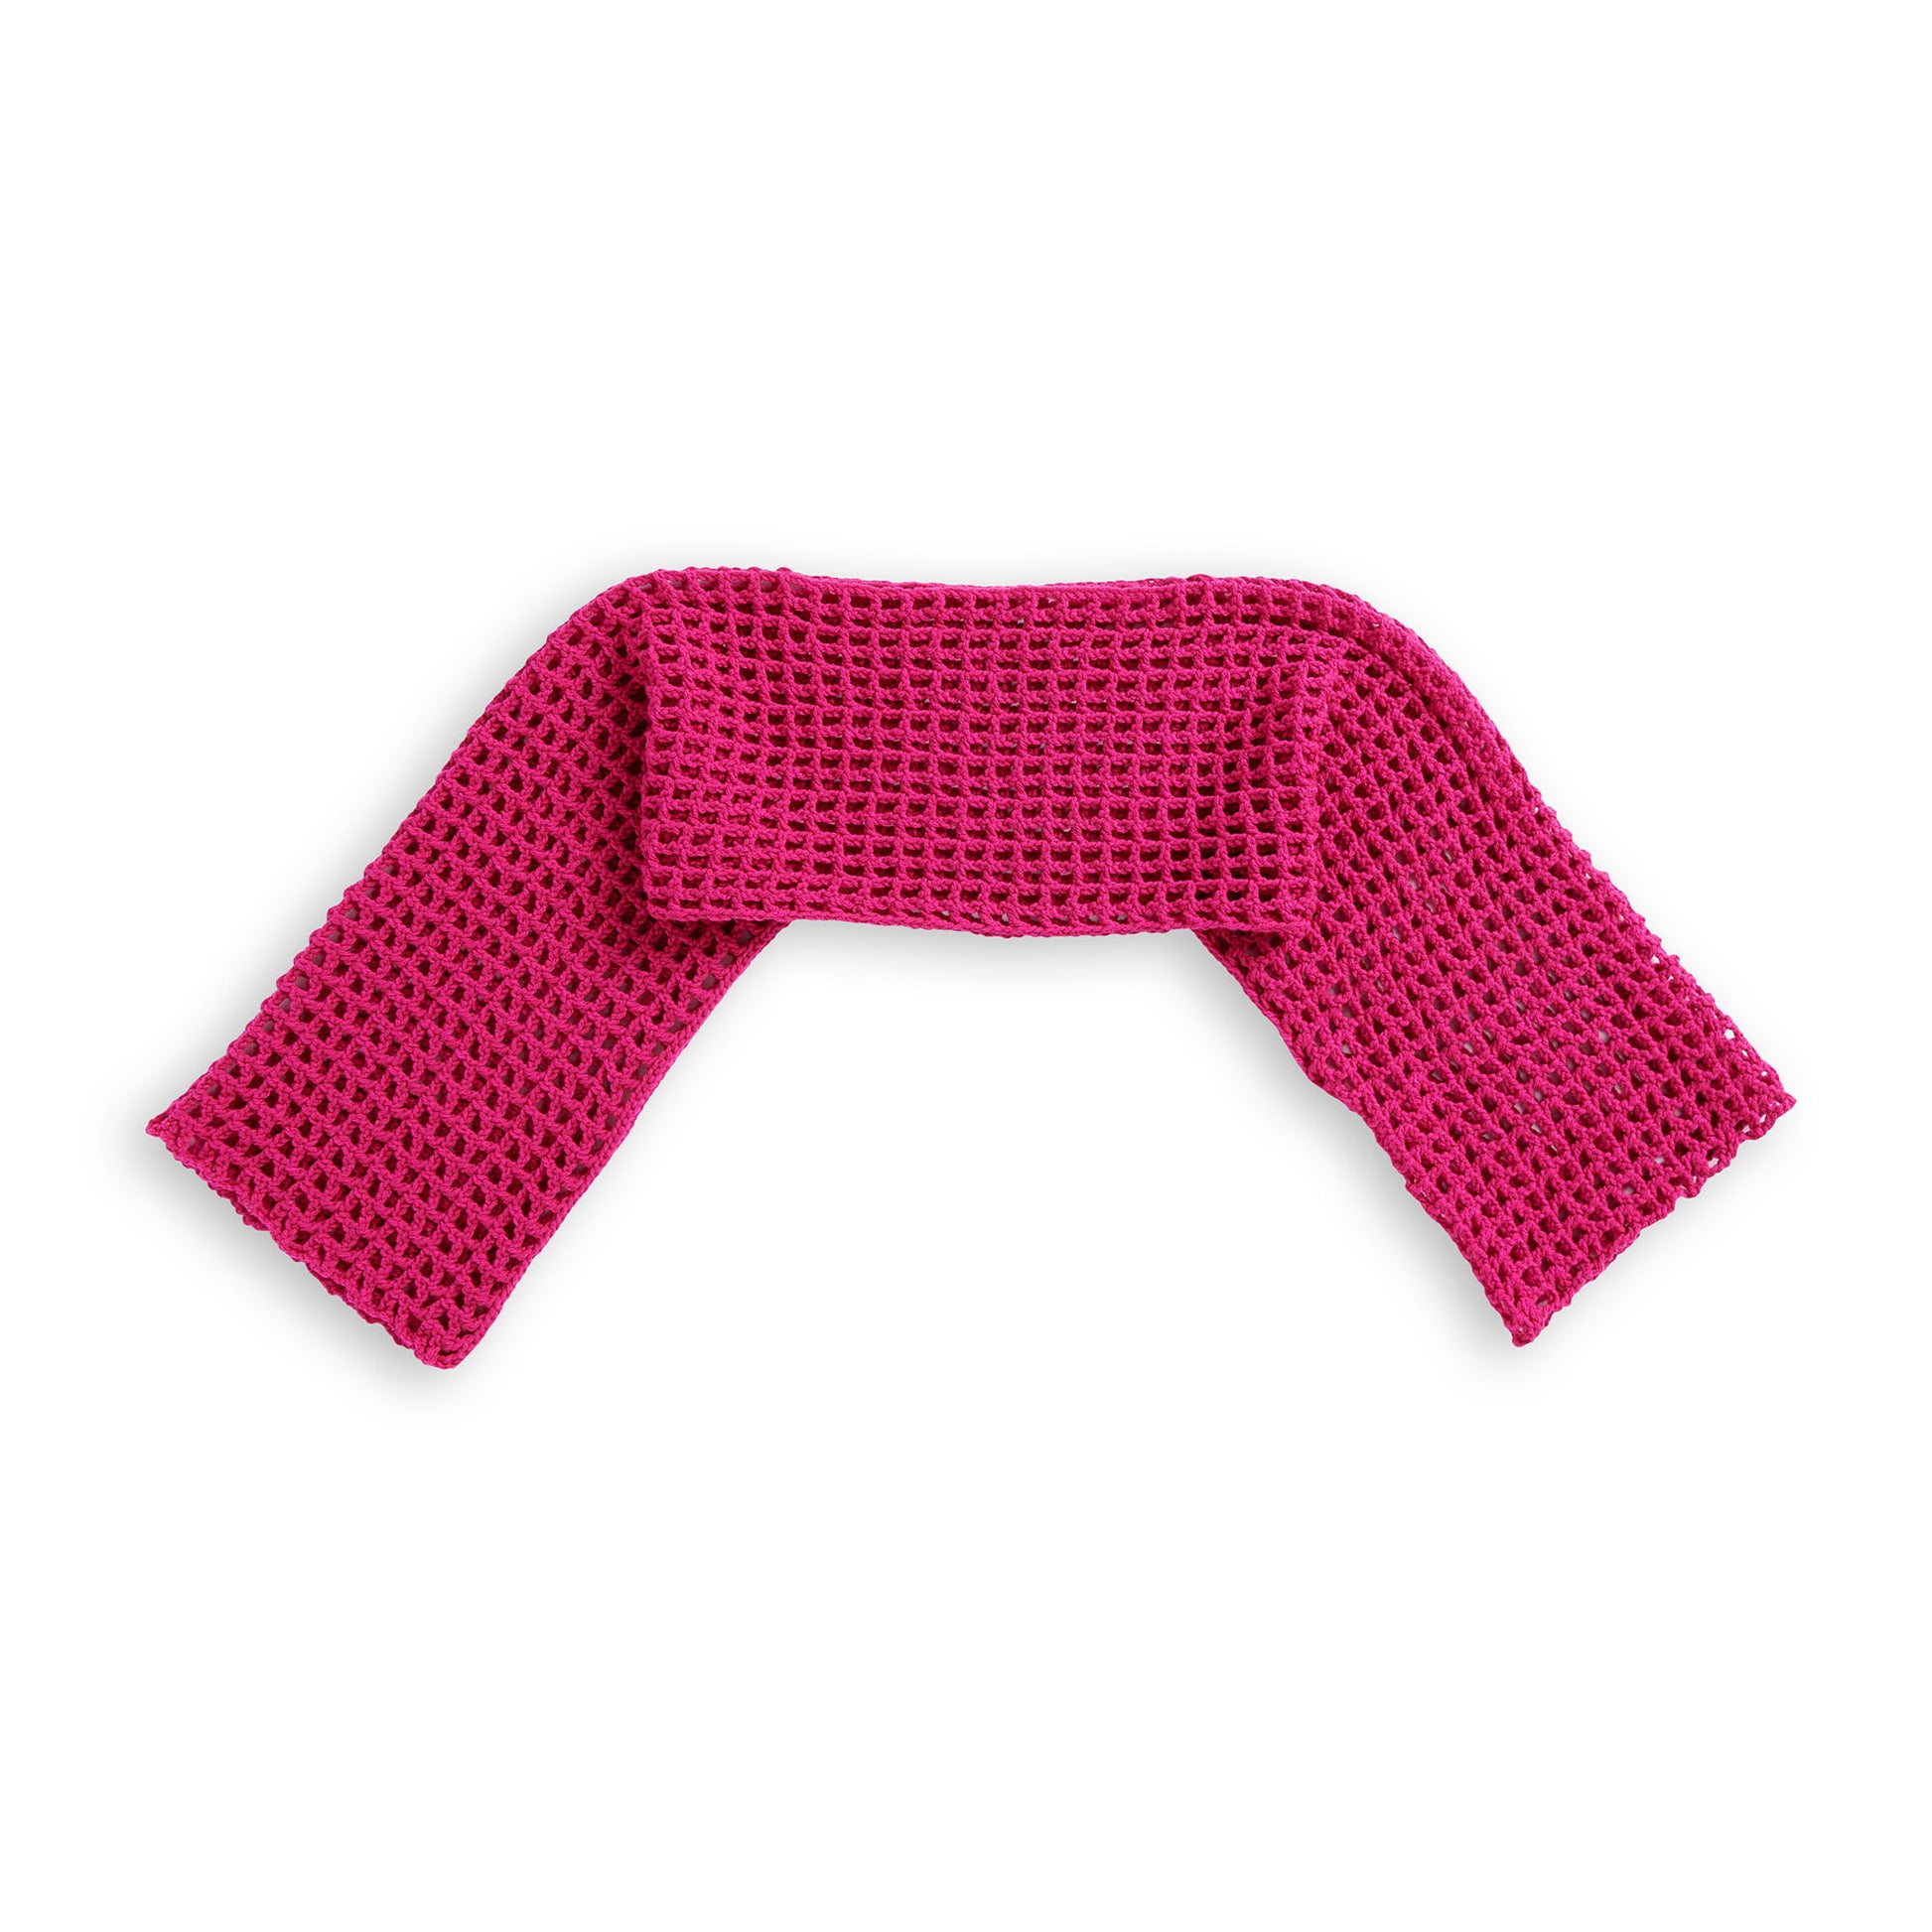 Free Red Heart Crochet Mesh Shrug Pattern